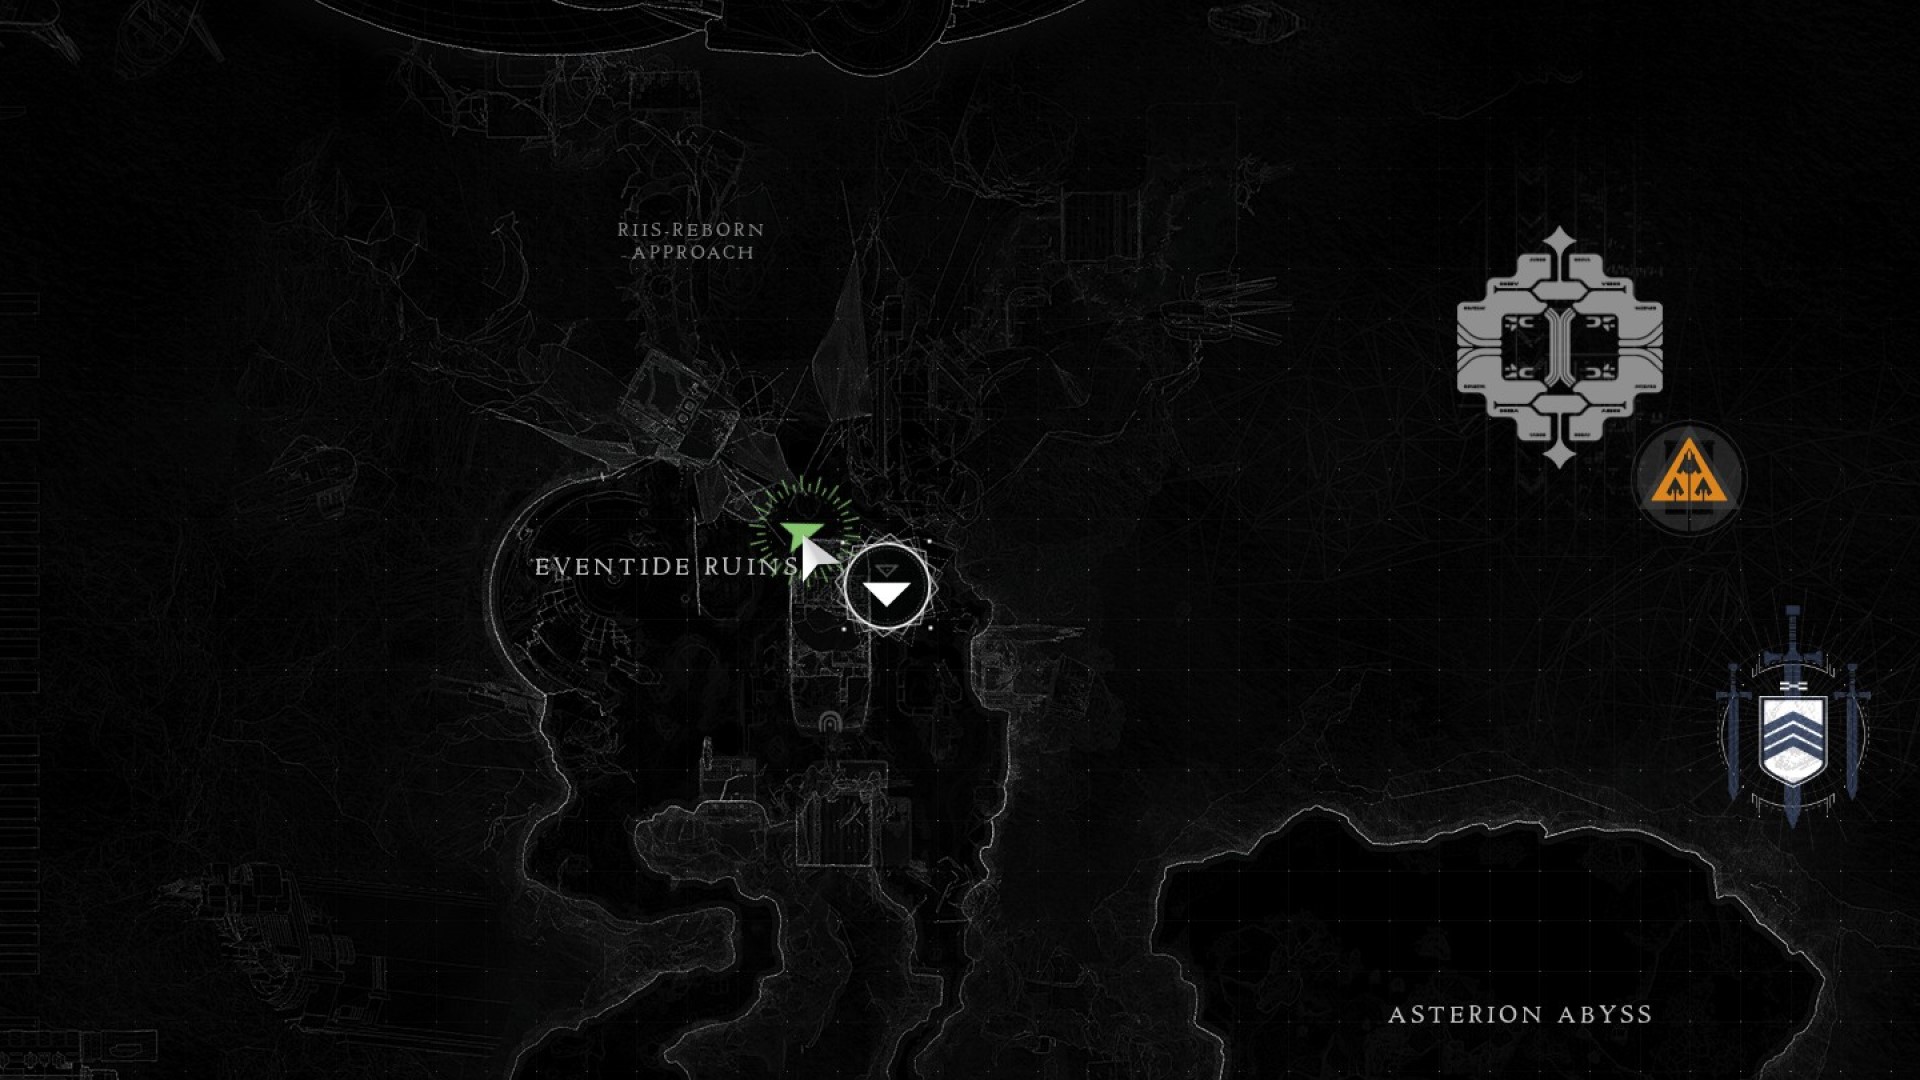 Destiny 2 Cryptic Quatrain 1 location